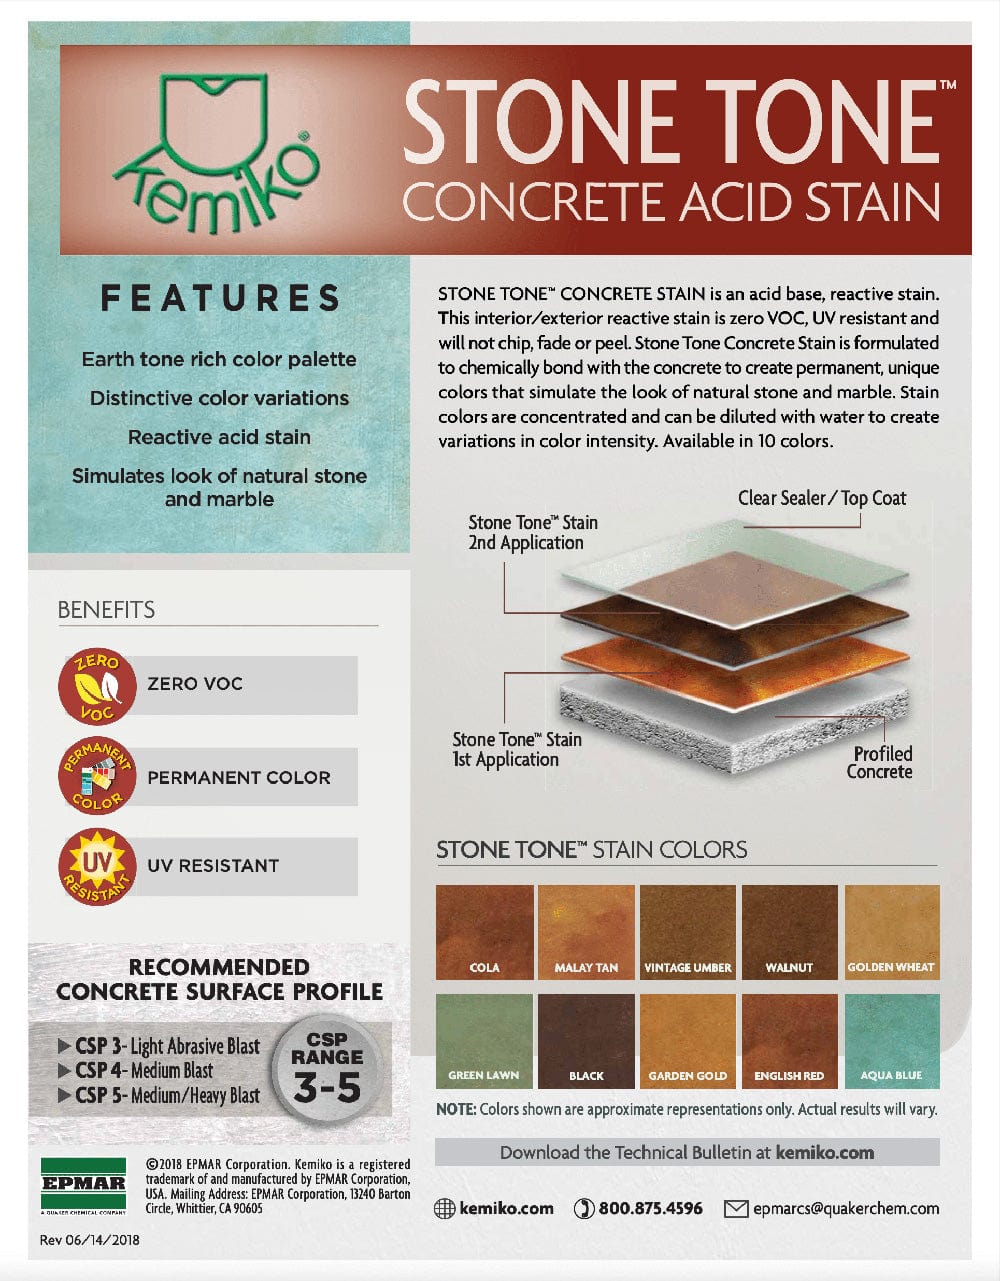 Stone Tone Concrete Stain - Xtreme Polishing Systems - kemiko acid stain, kemiko concrete stain, kemiko stone tone concrete stain